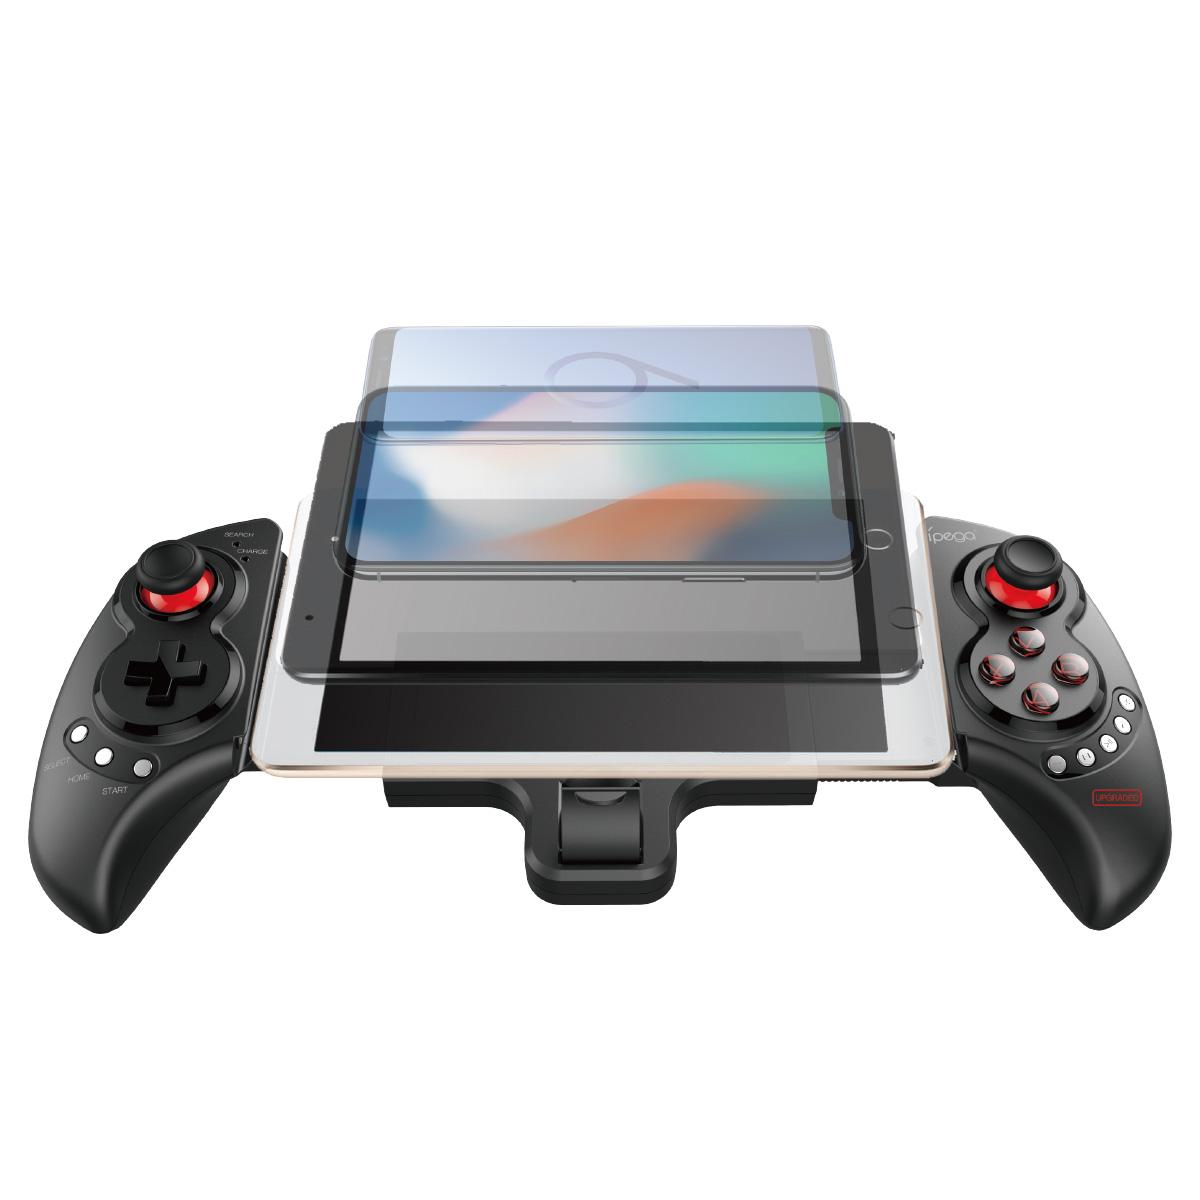 Bezdrátový ovladač iPega PG-9023s / GamePad s držákem na telefon